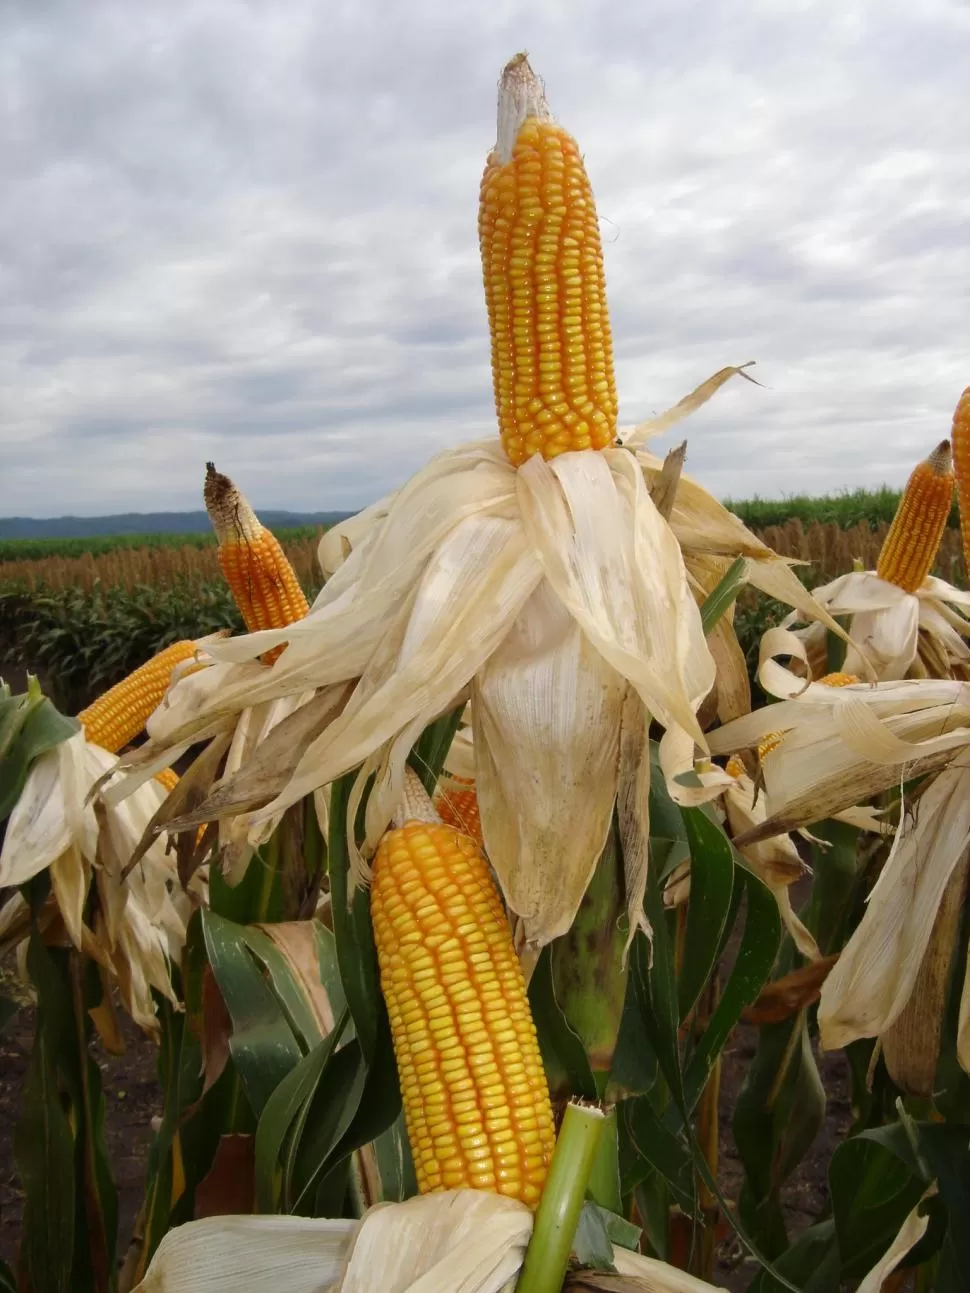 DATO. Más de 600 productos tienen maíz, y se siguen descubriendo usos.   